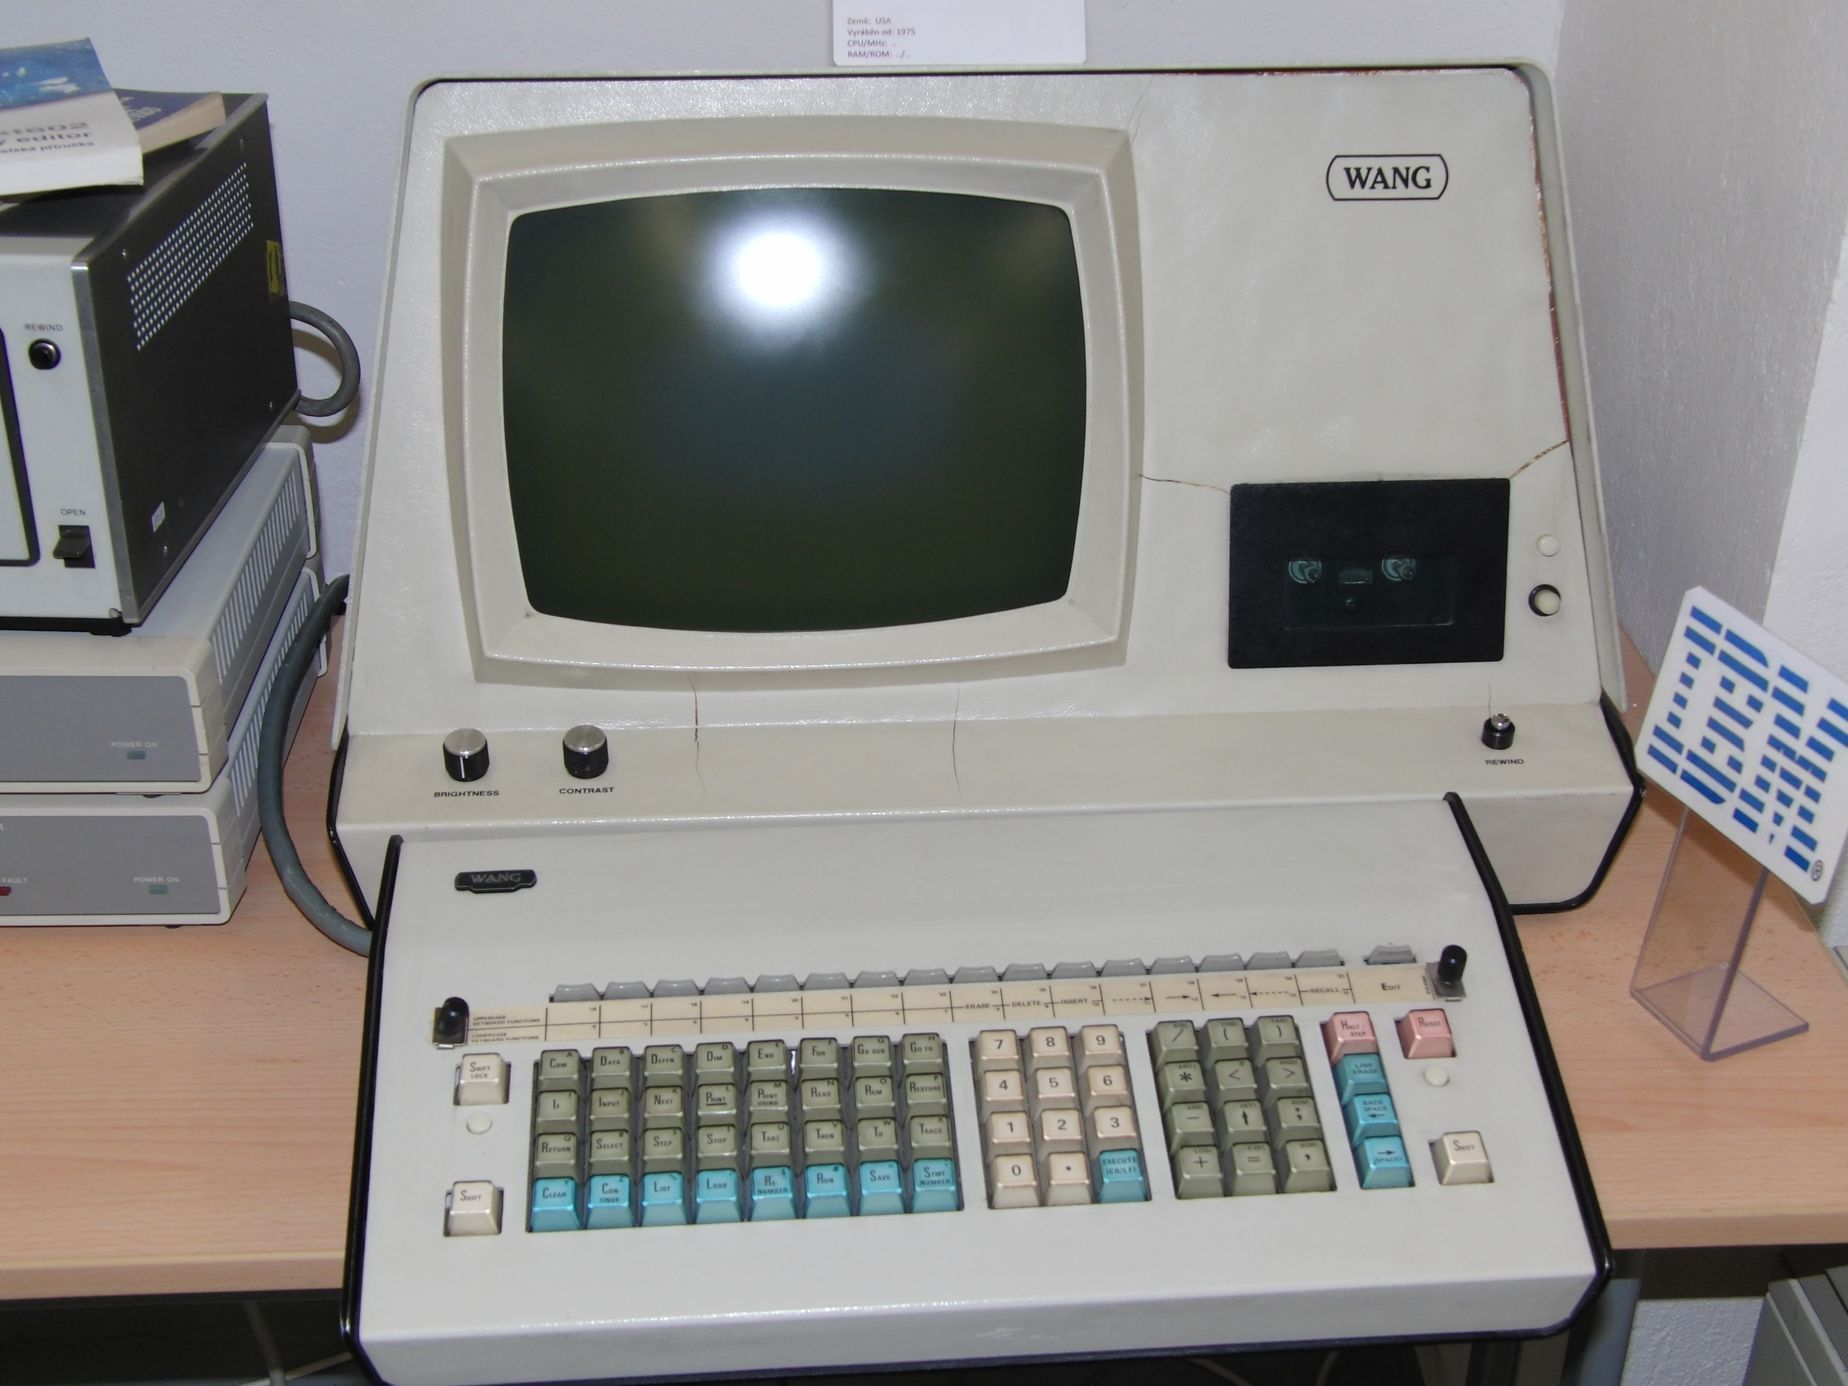 Staré počítače, konzole - retro